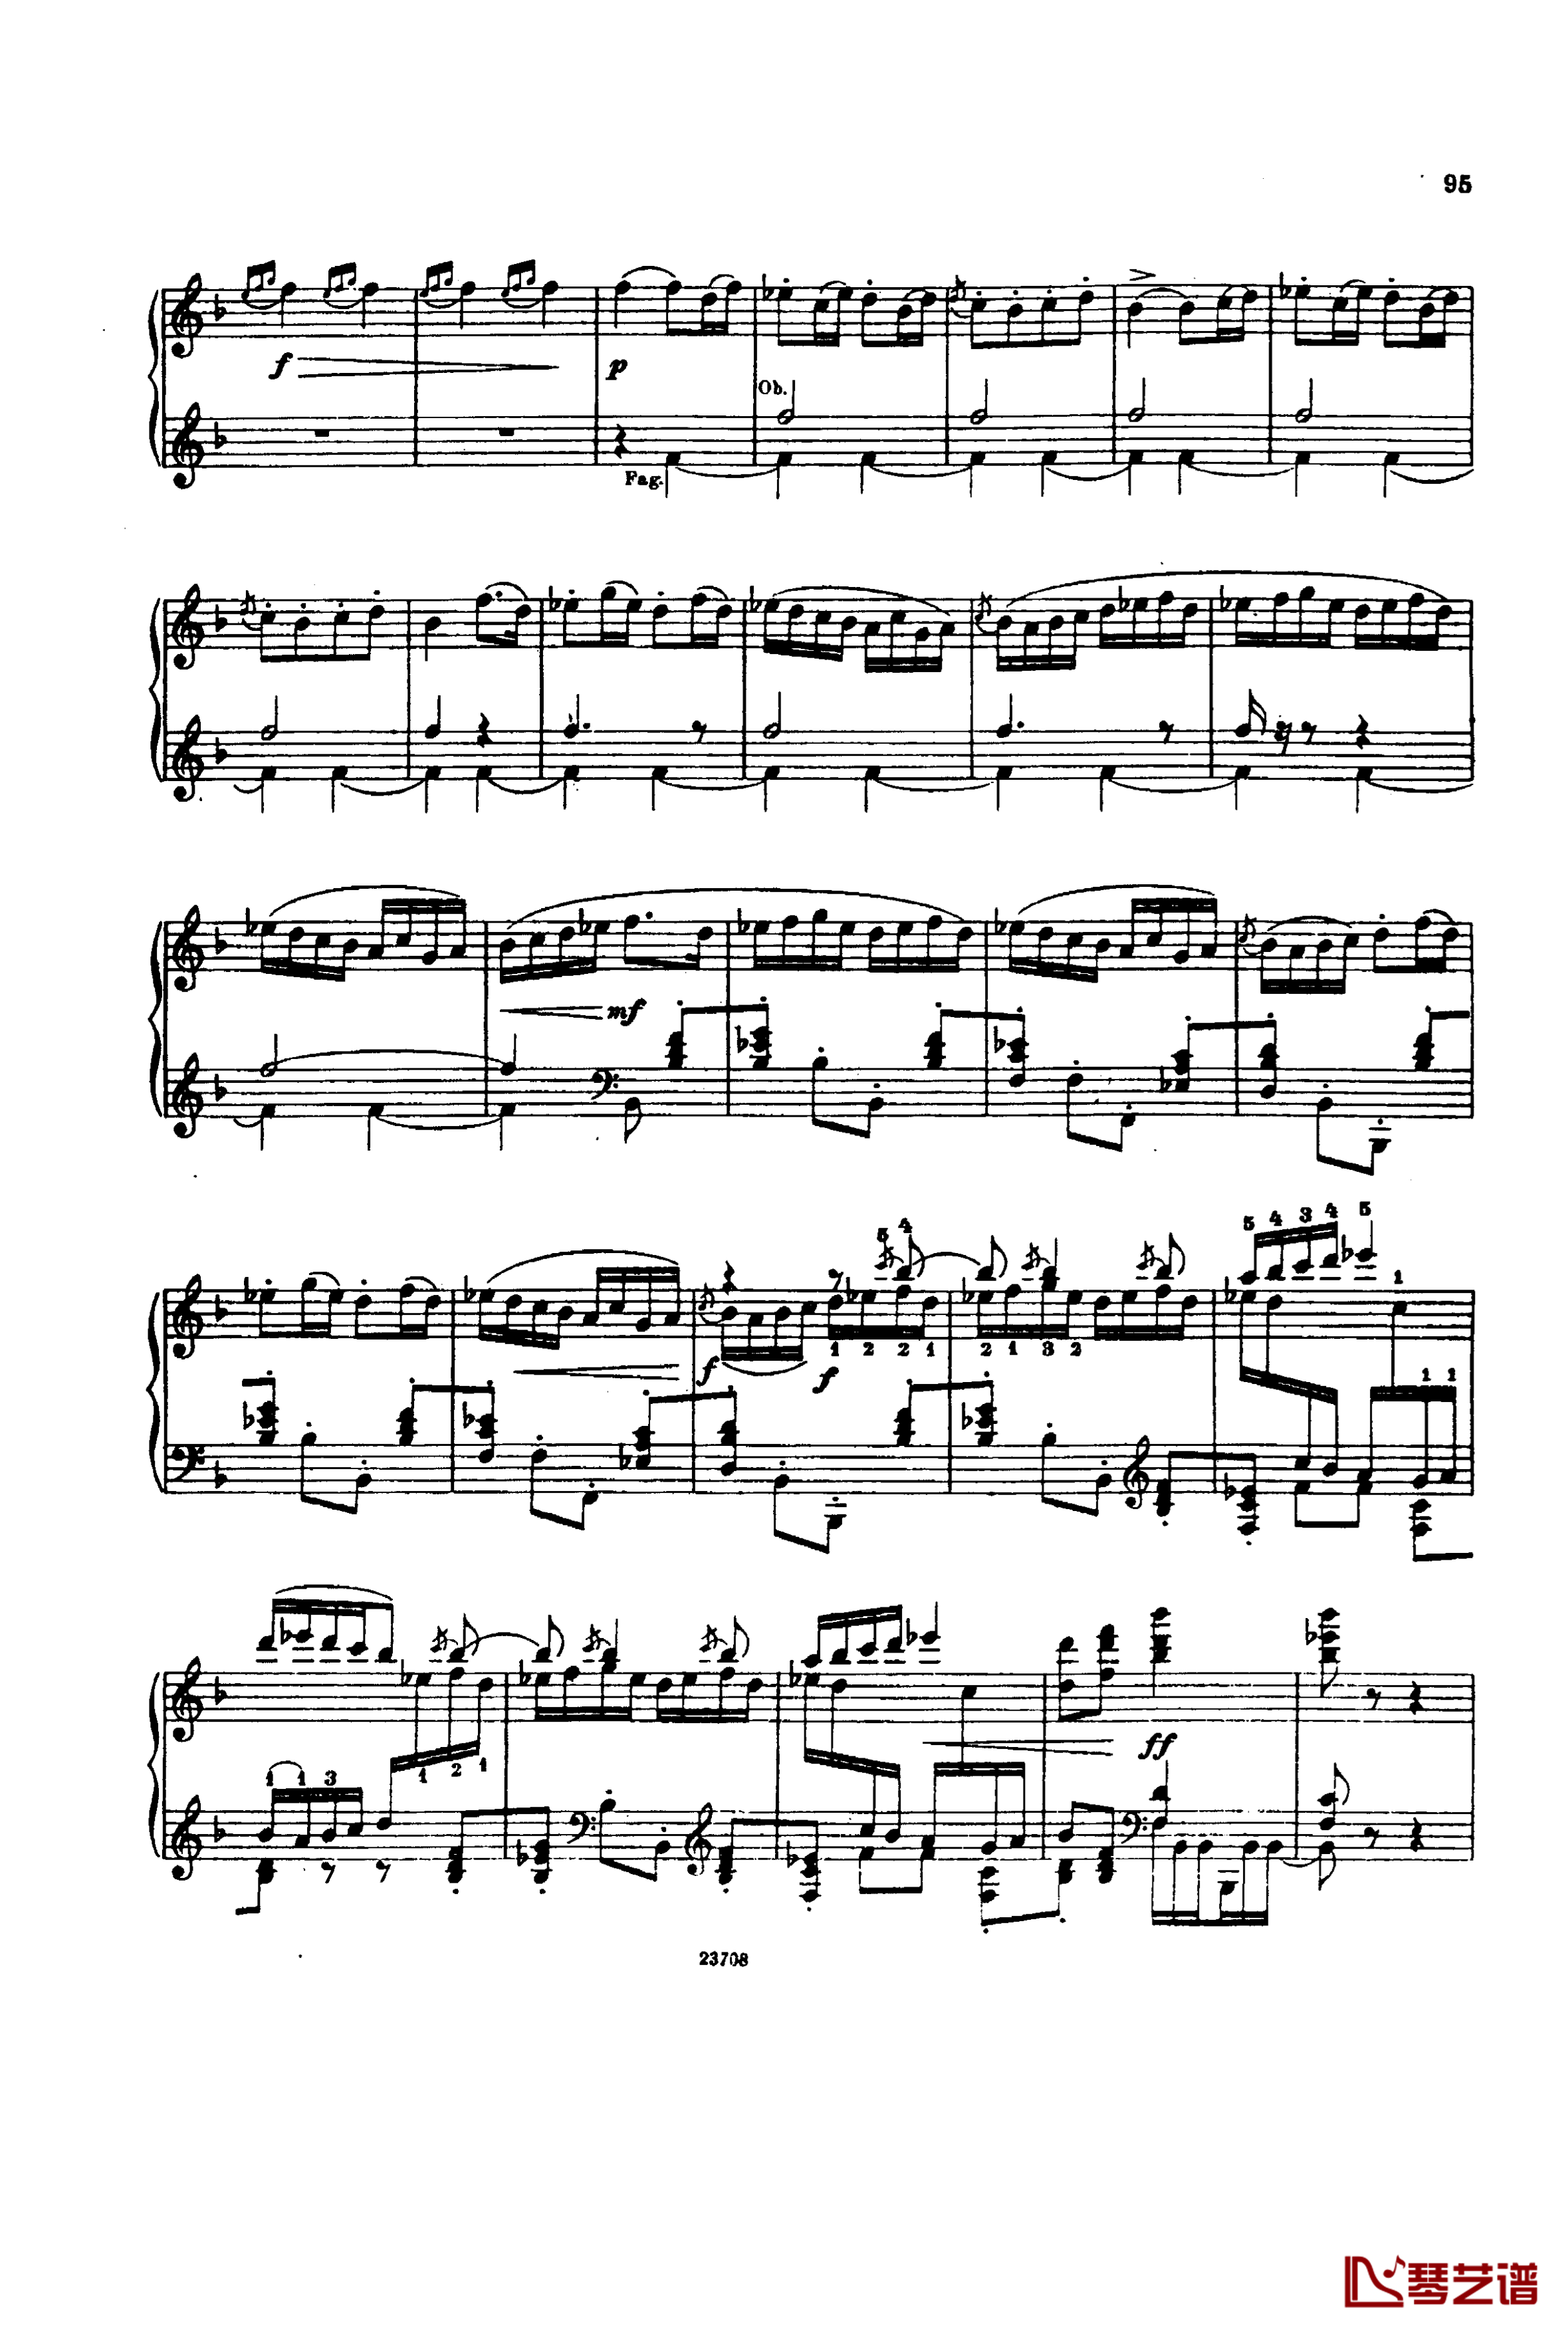 卡玛林斯卡亚幻想曲钢琴谱-格林卡9